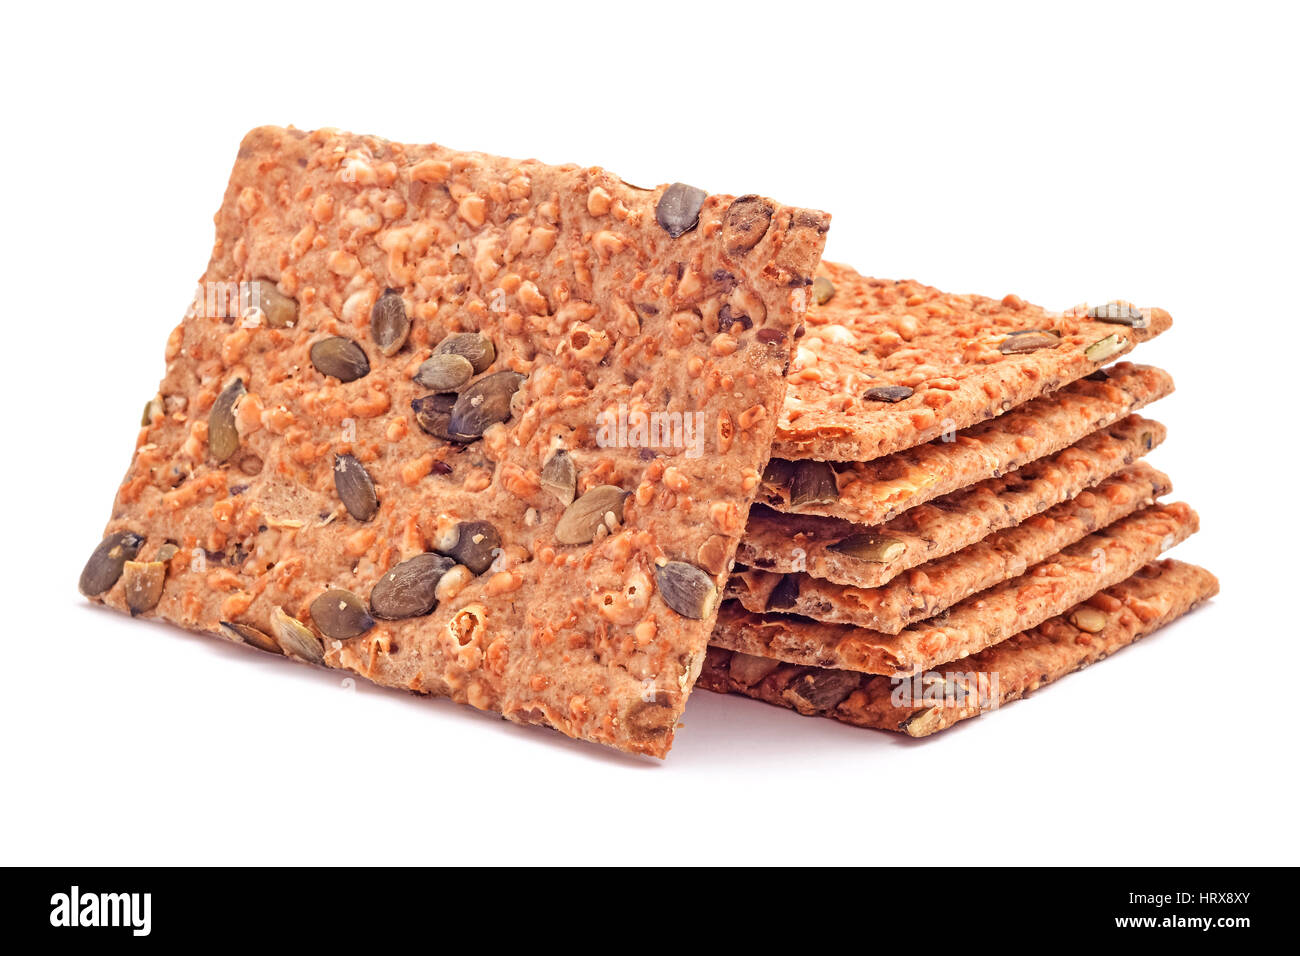 Basso contenuto calorico pane duro snack Foto stock - Alamy